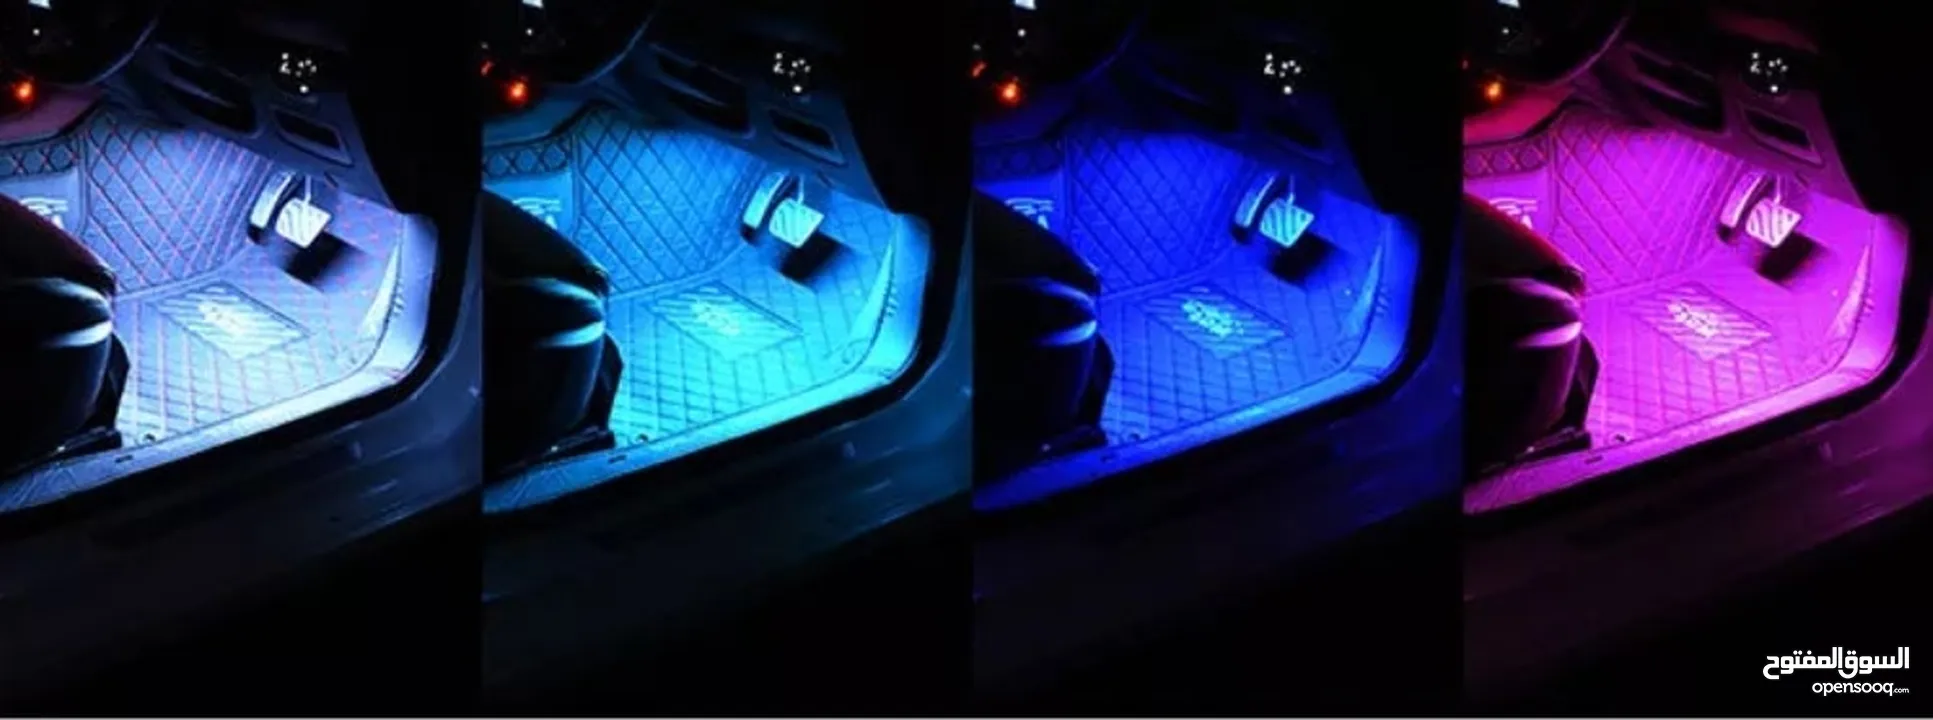 إضاءة لمقاعد السيارة تعمل ب usb